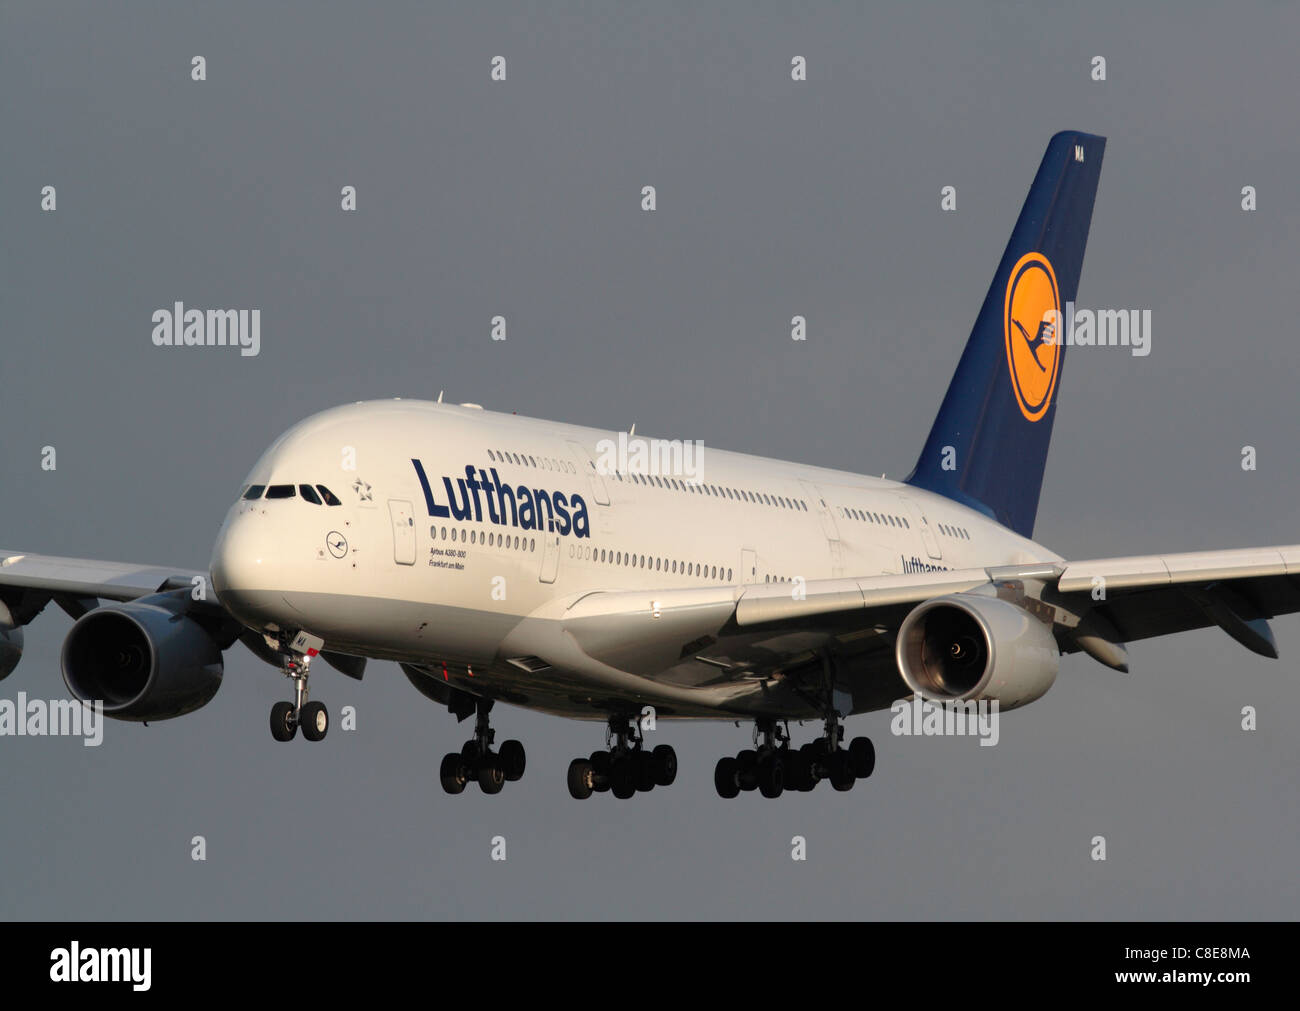 Lufthansa Airbus A380 double-decker widebody passenger jet avion, souvent appelé le très gros porteur, en approche finale. Transport aérien long courrier moderne. Banque D'Images